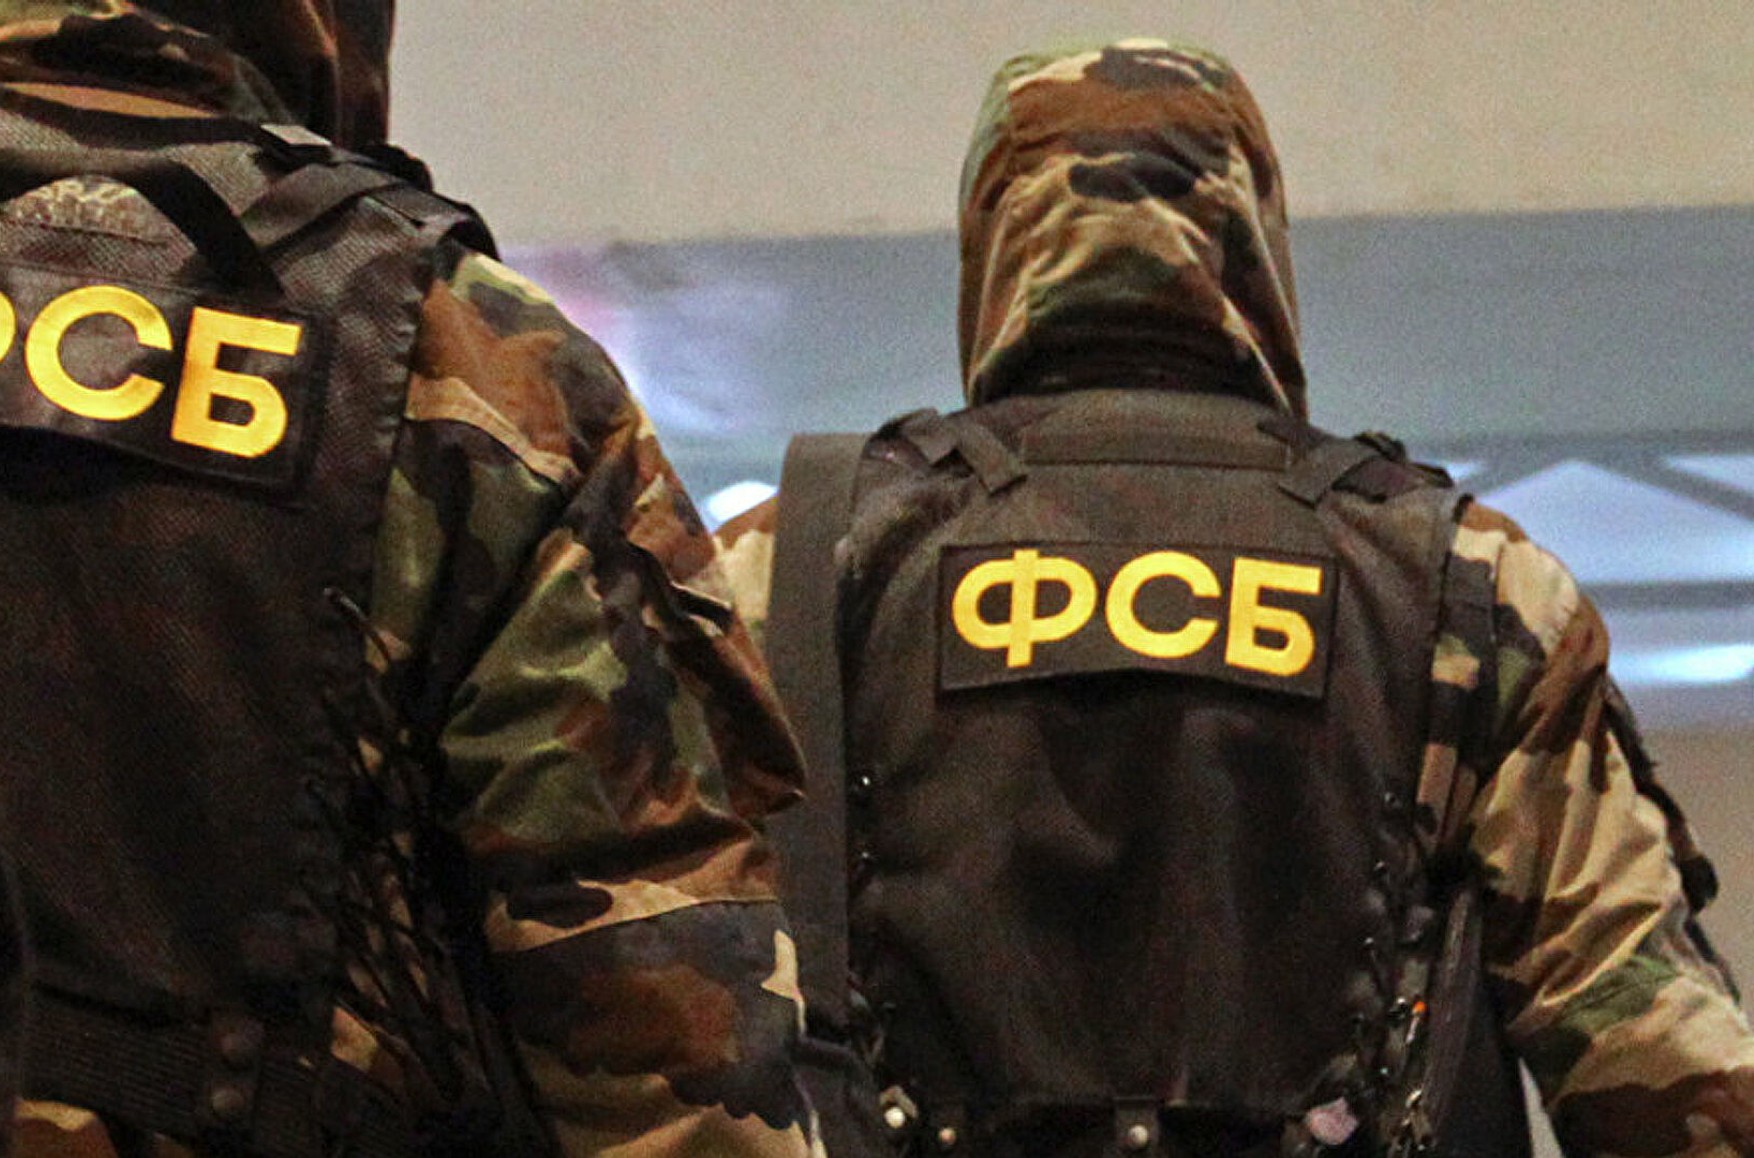 ФСБ повідомила про затримання в Санкт-Петербурзі українського консула Олександра Сосонюк за отримання закритої інформації